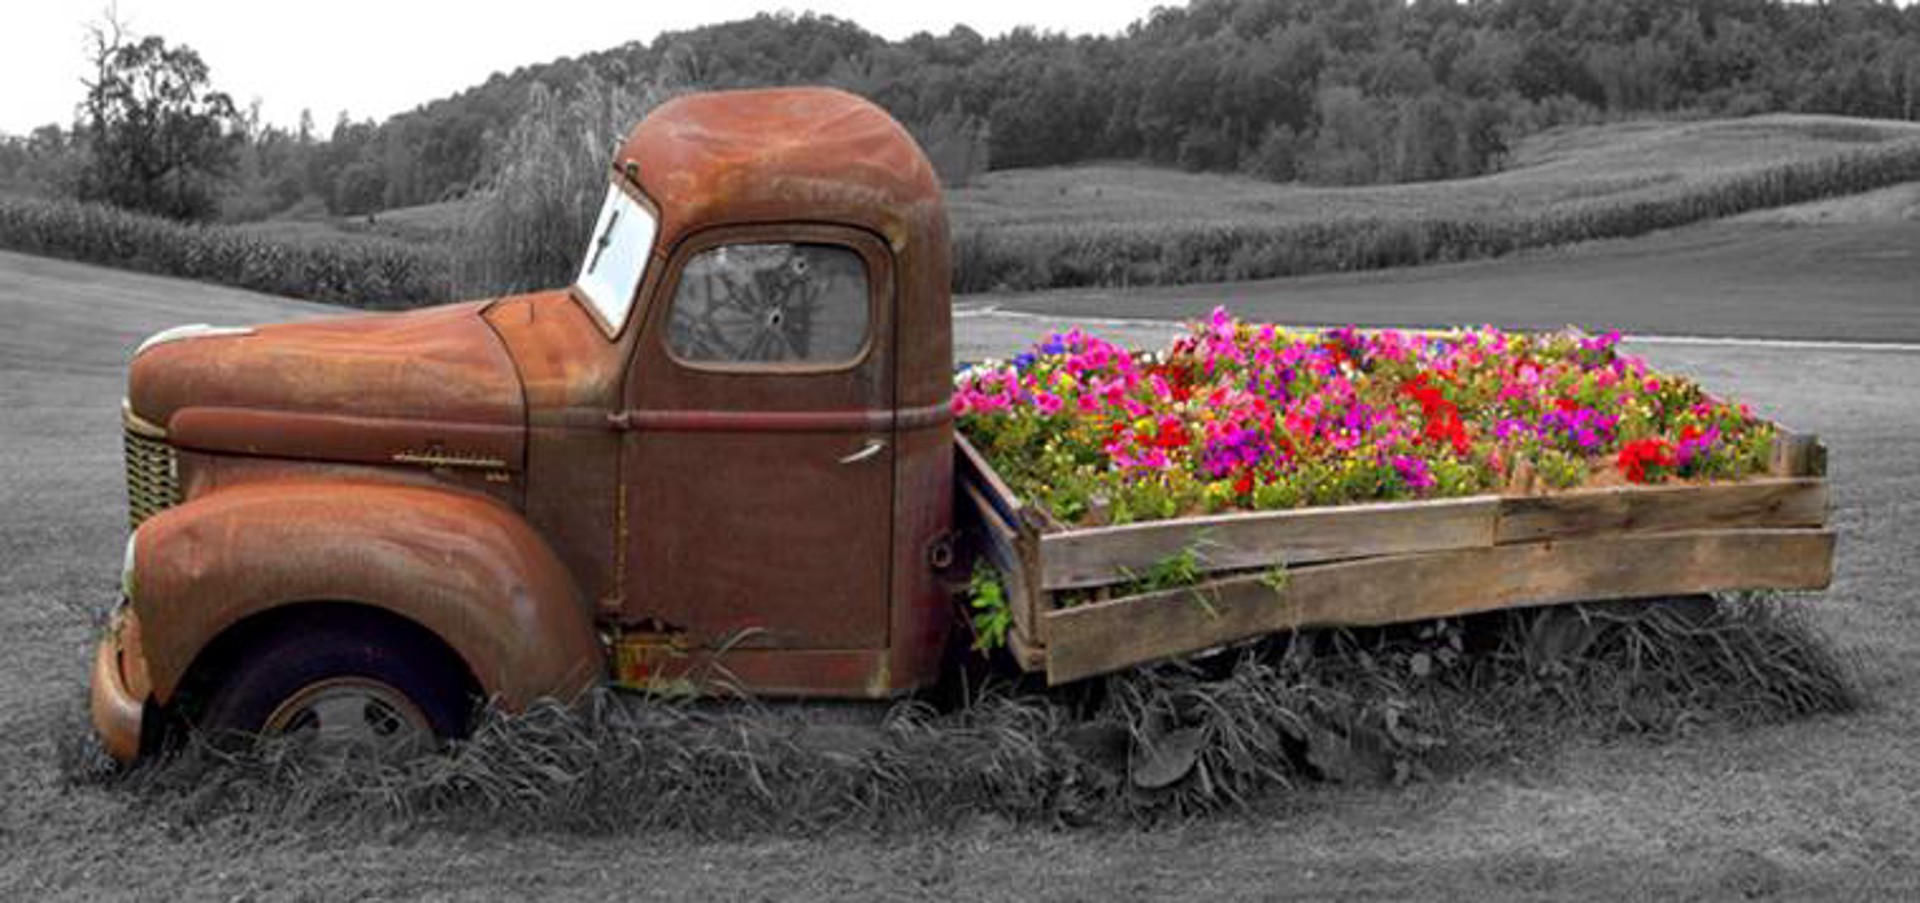 Truck & Flowers (8x17 Metal) by Pete Ramberg